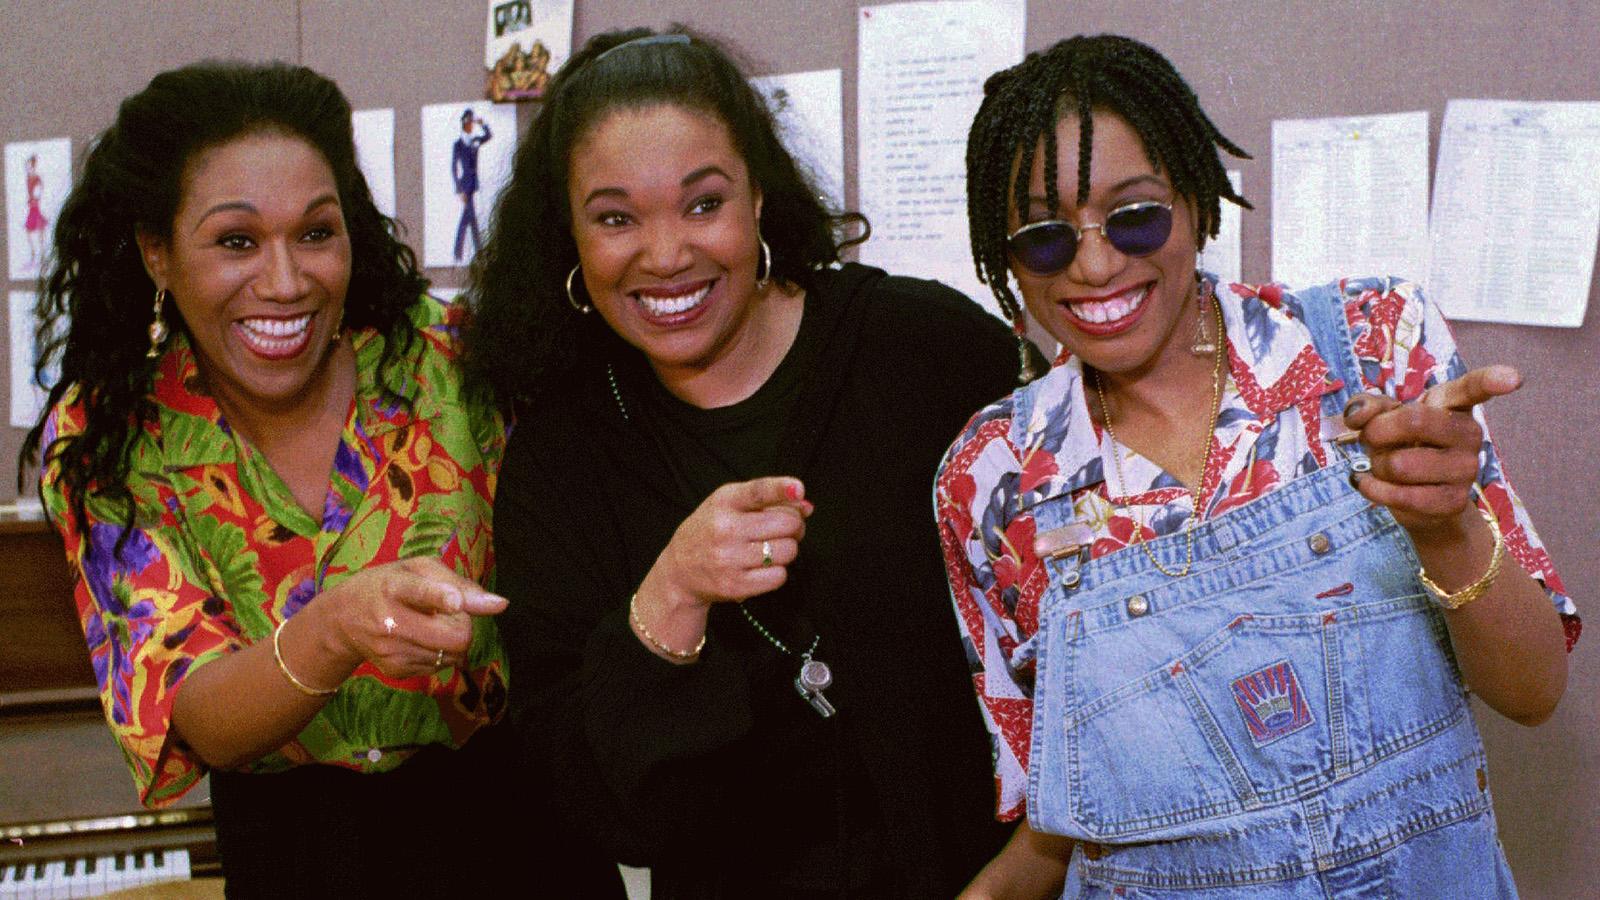 The Pointer sisters 1995, från vänster Ruth, Anita och June Pointer.